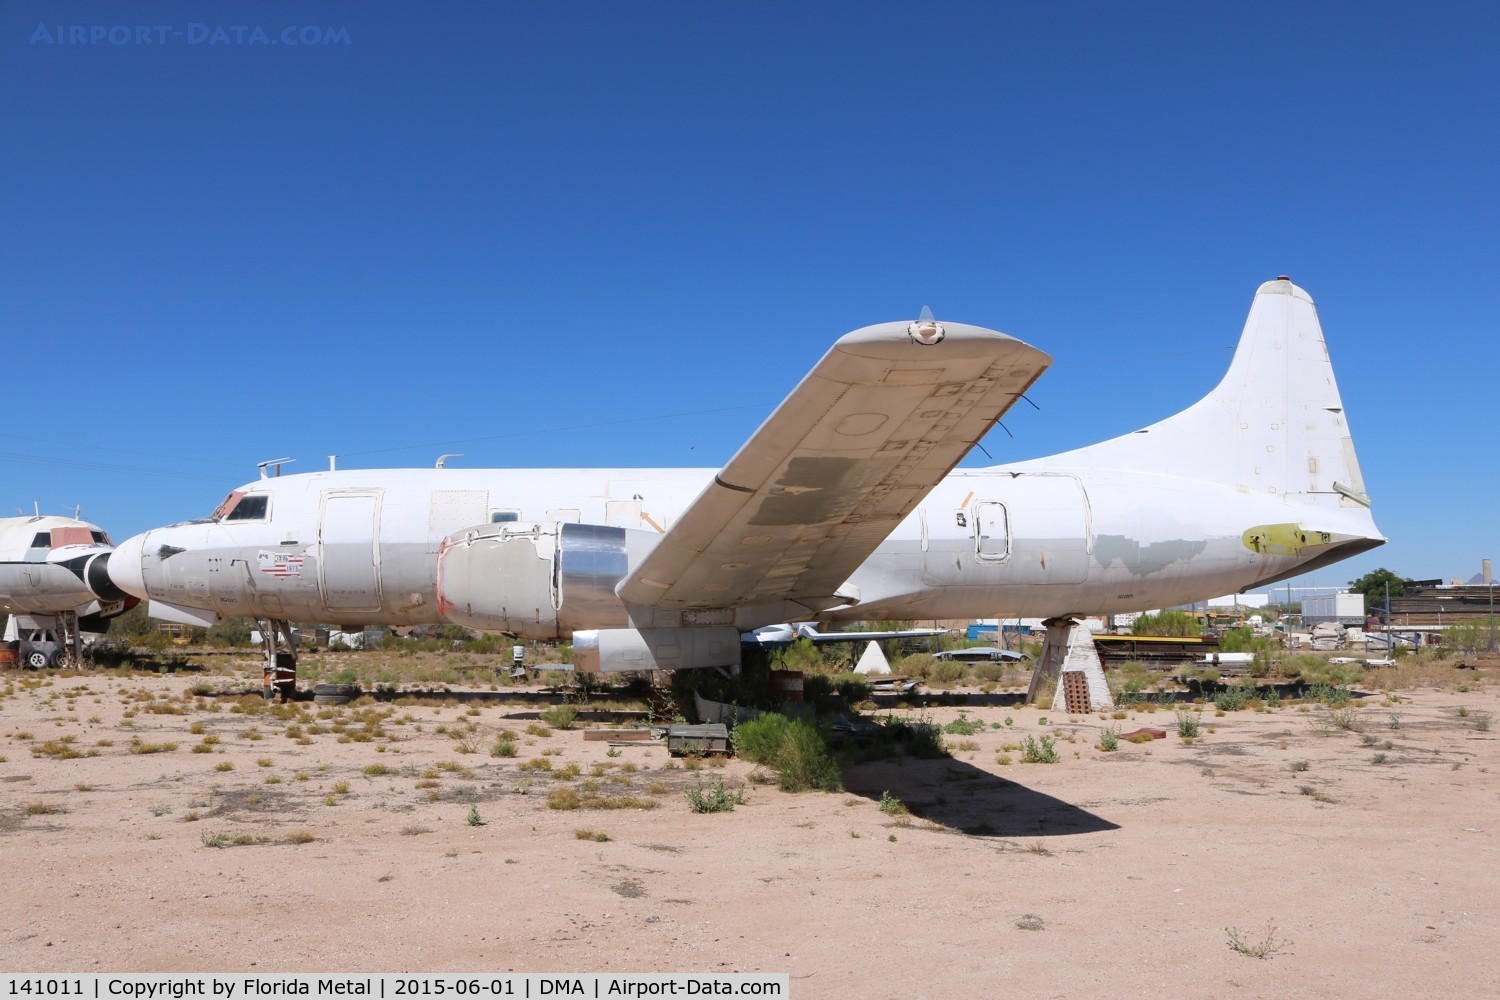 141011, Convair C-131F (R4Y-1) Samaritan C/N 294, R4Y-1